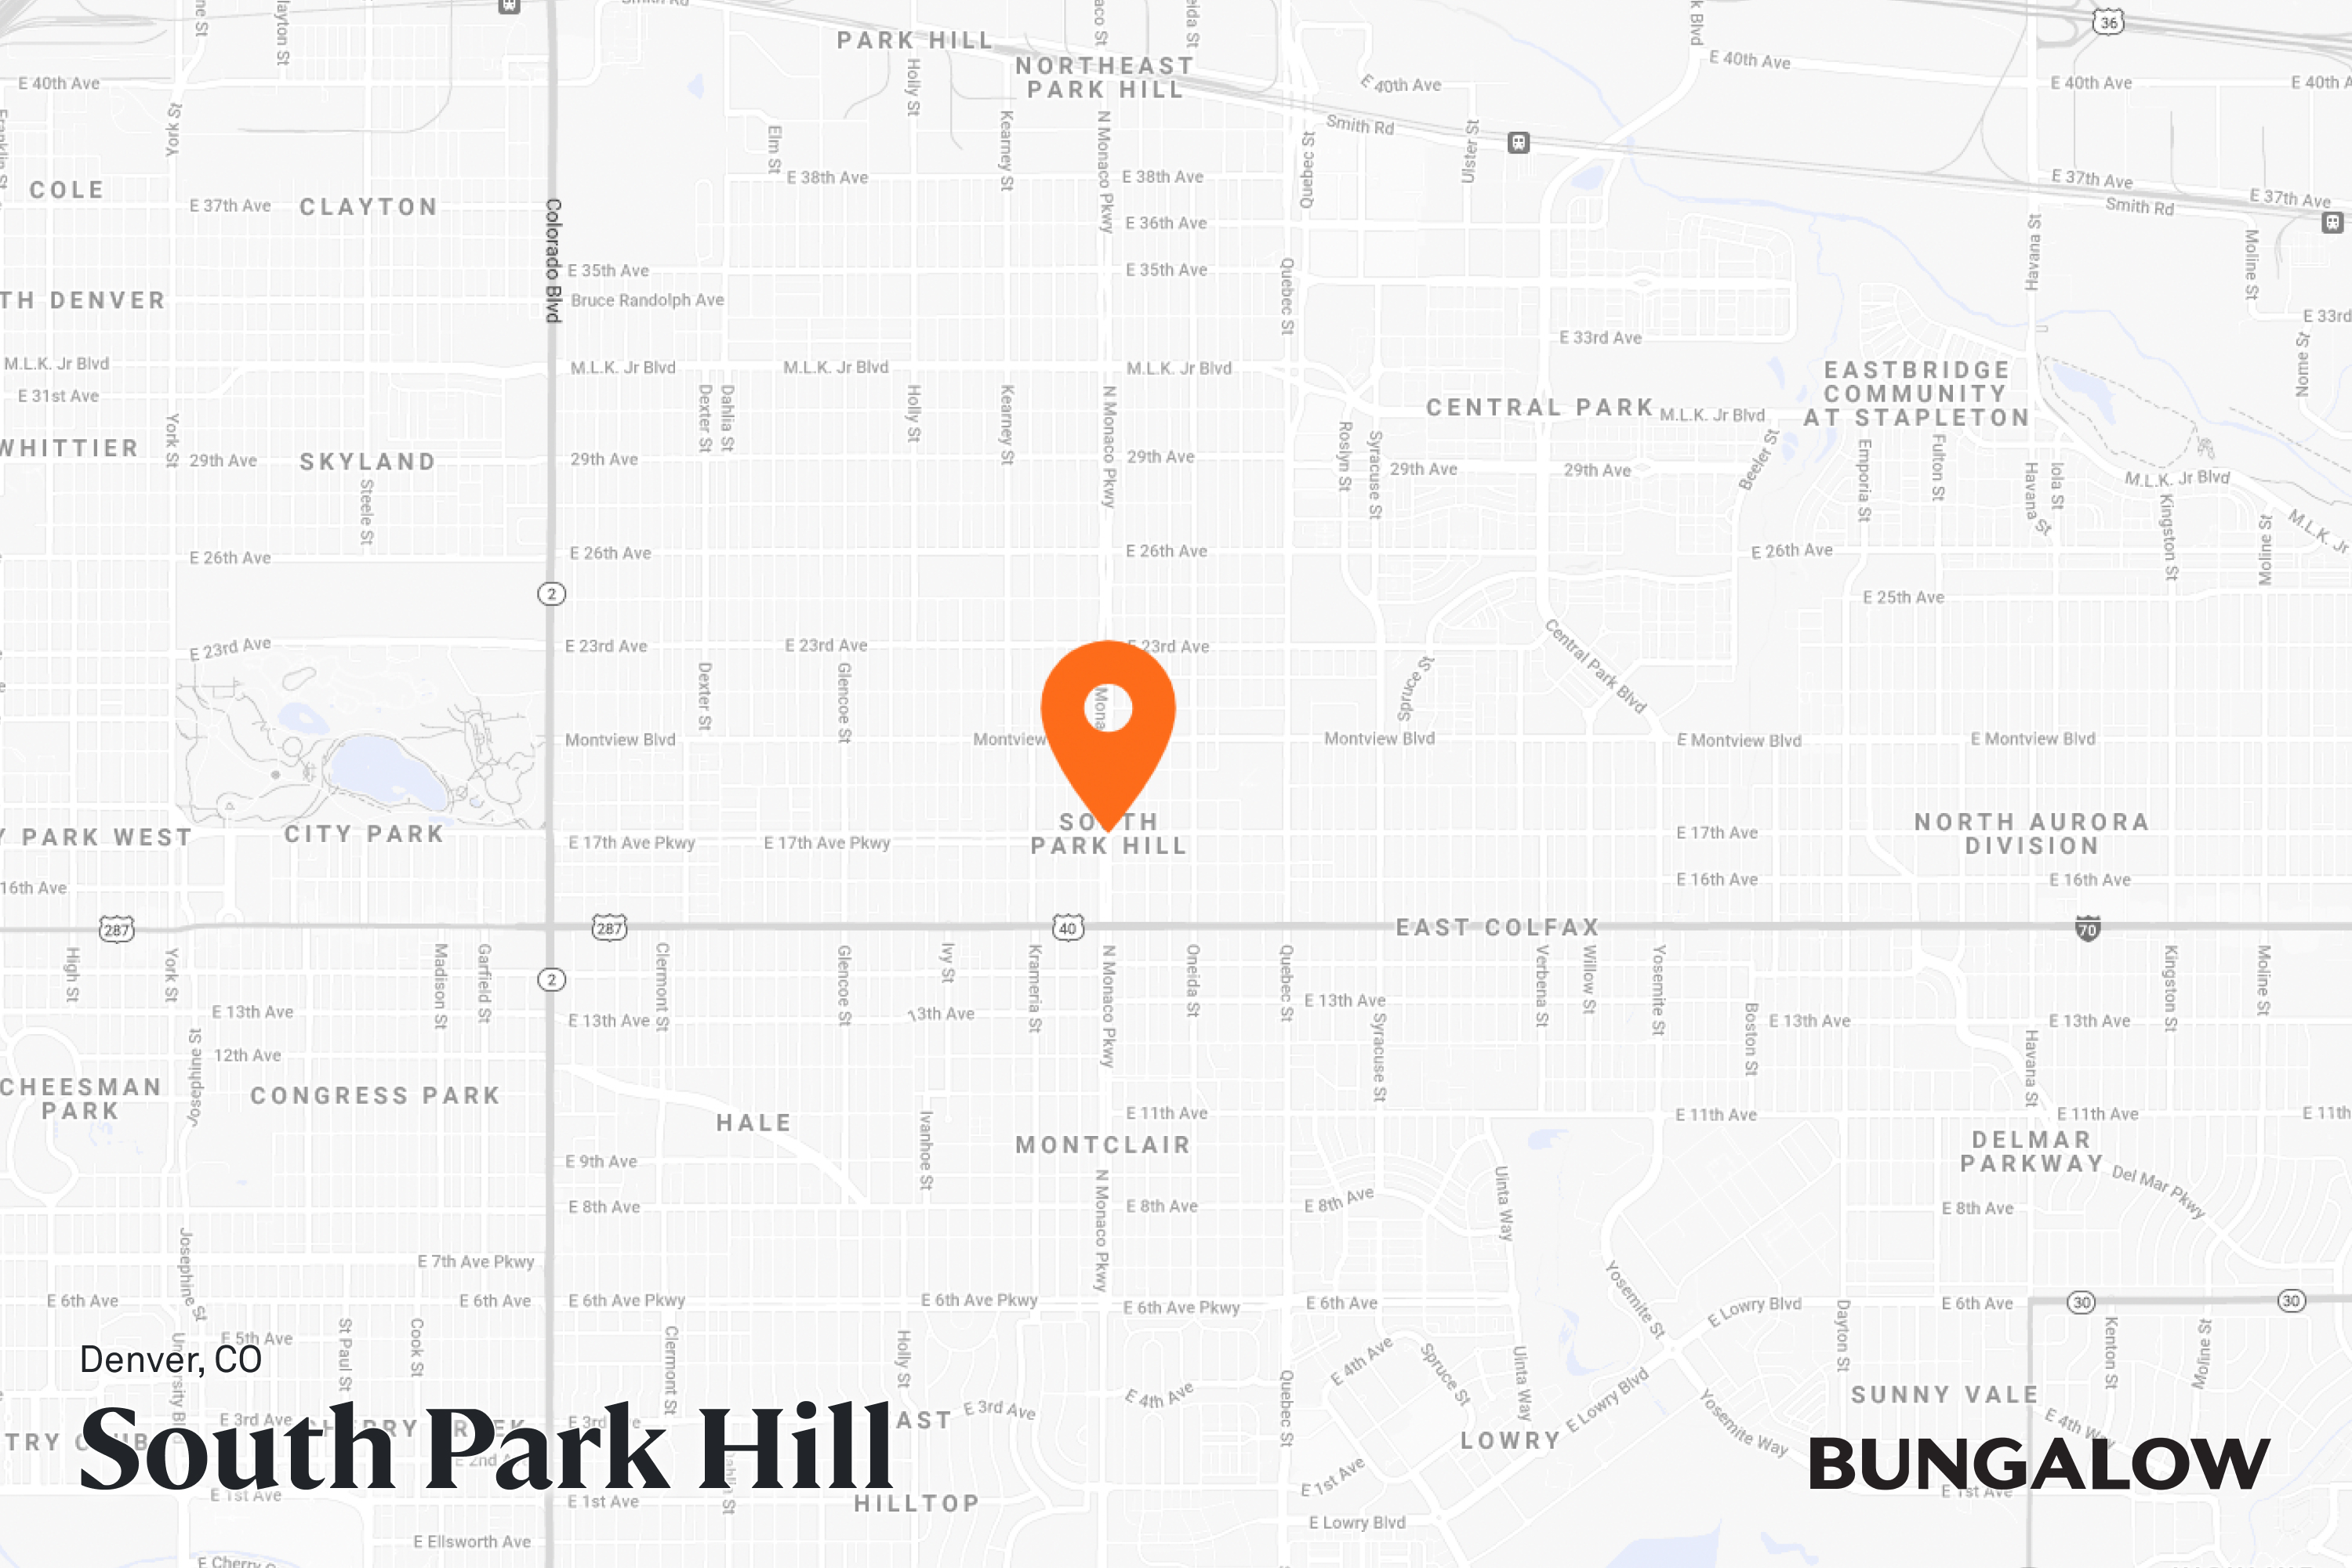 South Park Hill Neighborhood Map - Denver, Colorado